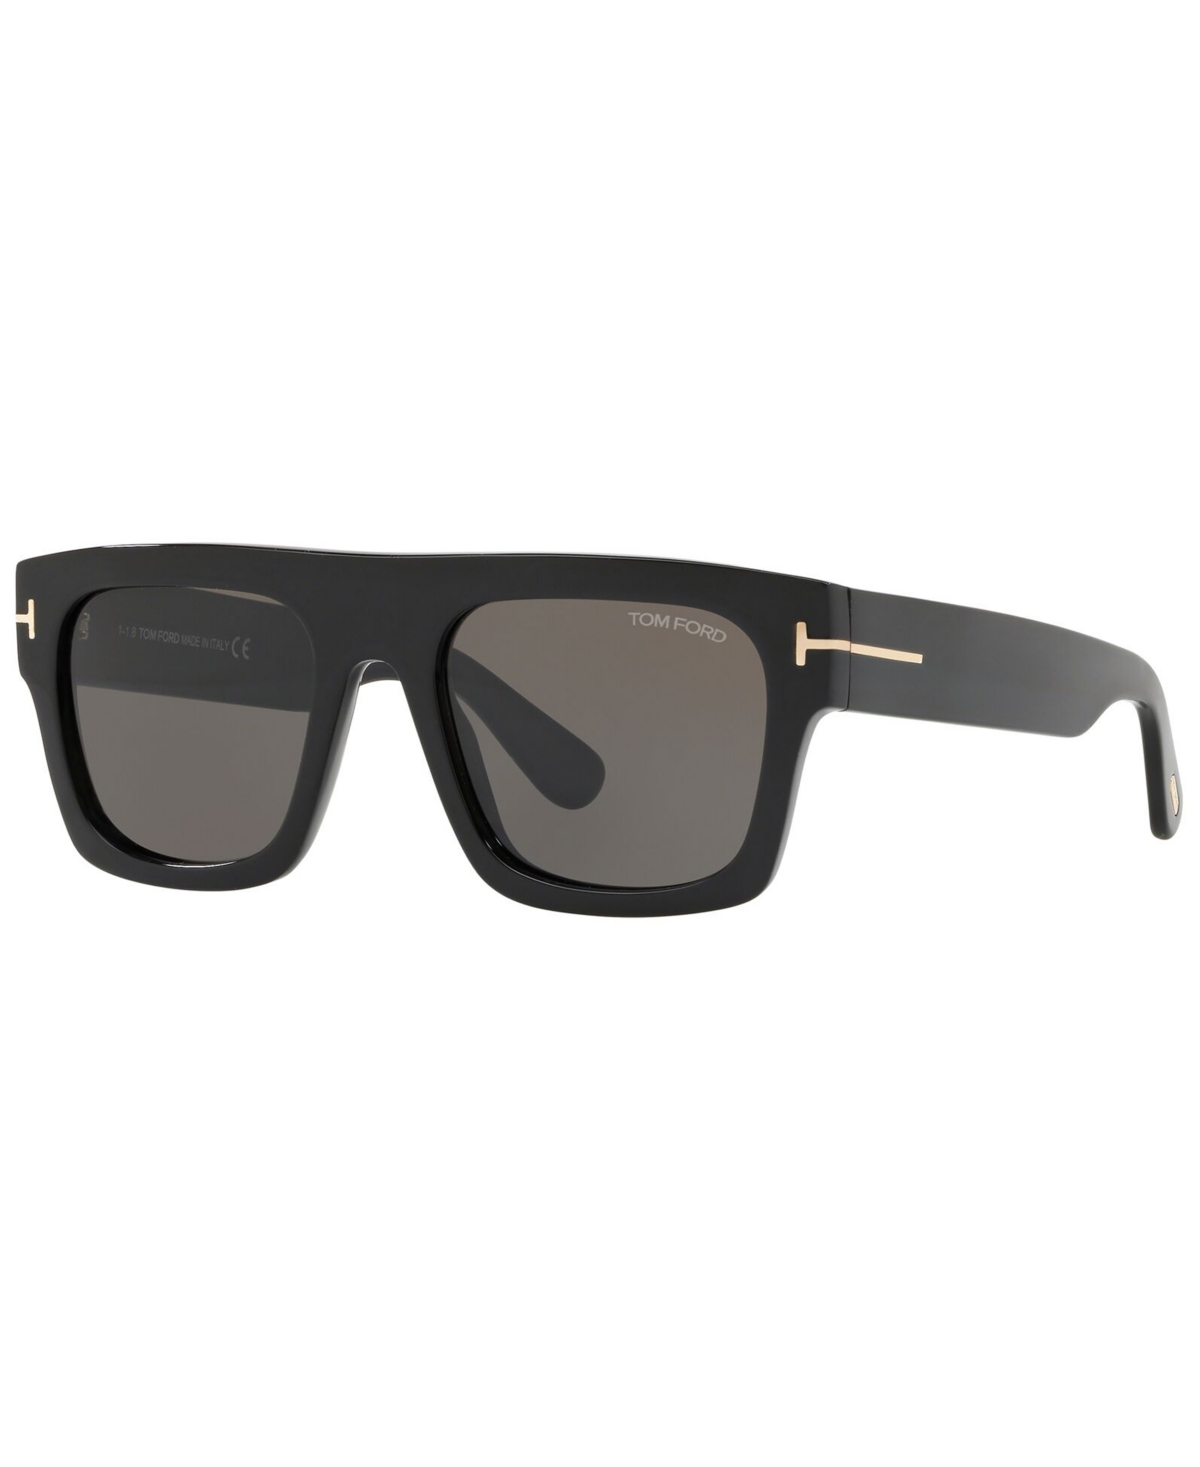 Tom Ford Men's Sunglasses, Tr001029 In Black Shiny,grey